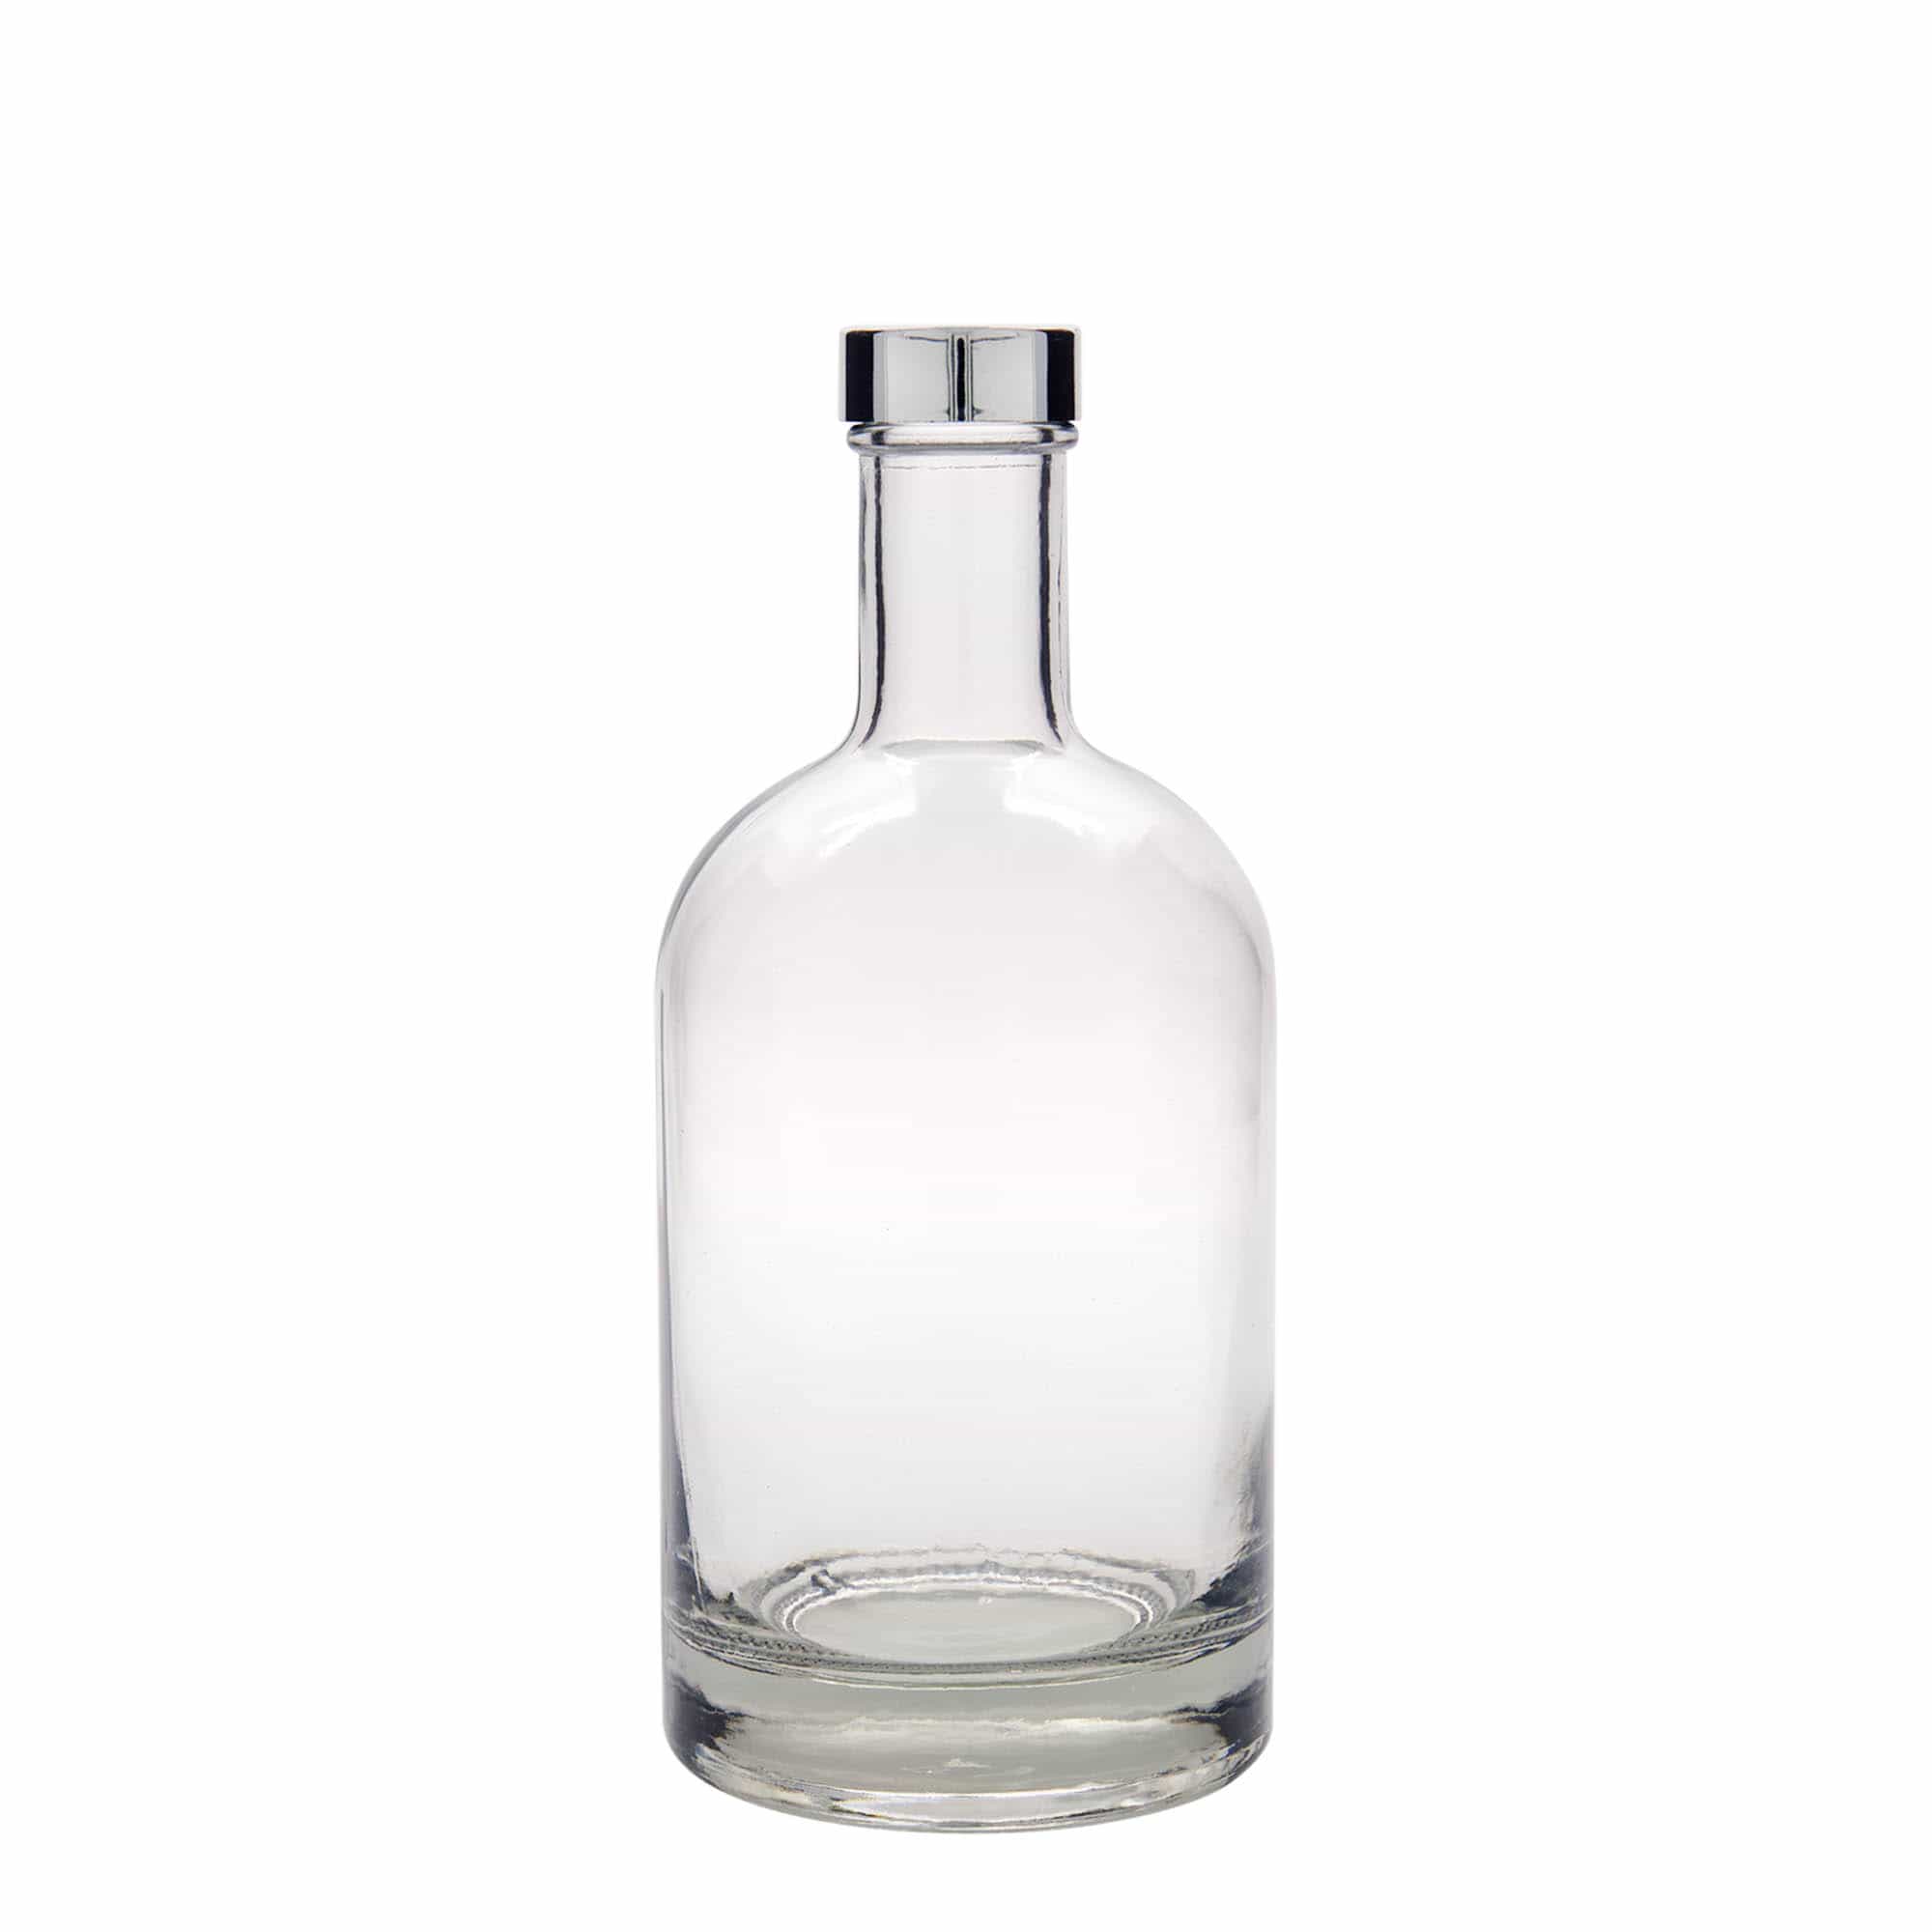 Skleněná lahev 700 ml 'First Class', uzávěr: GPI 33